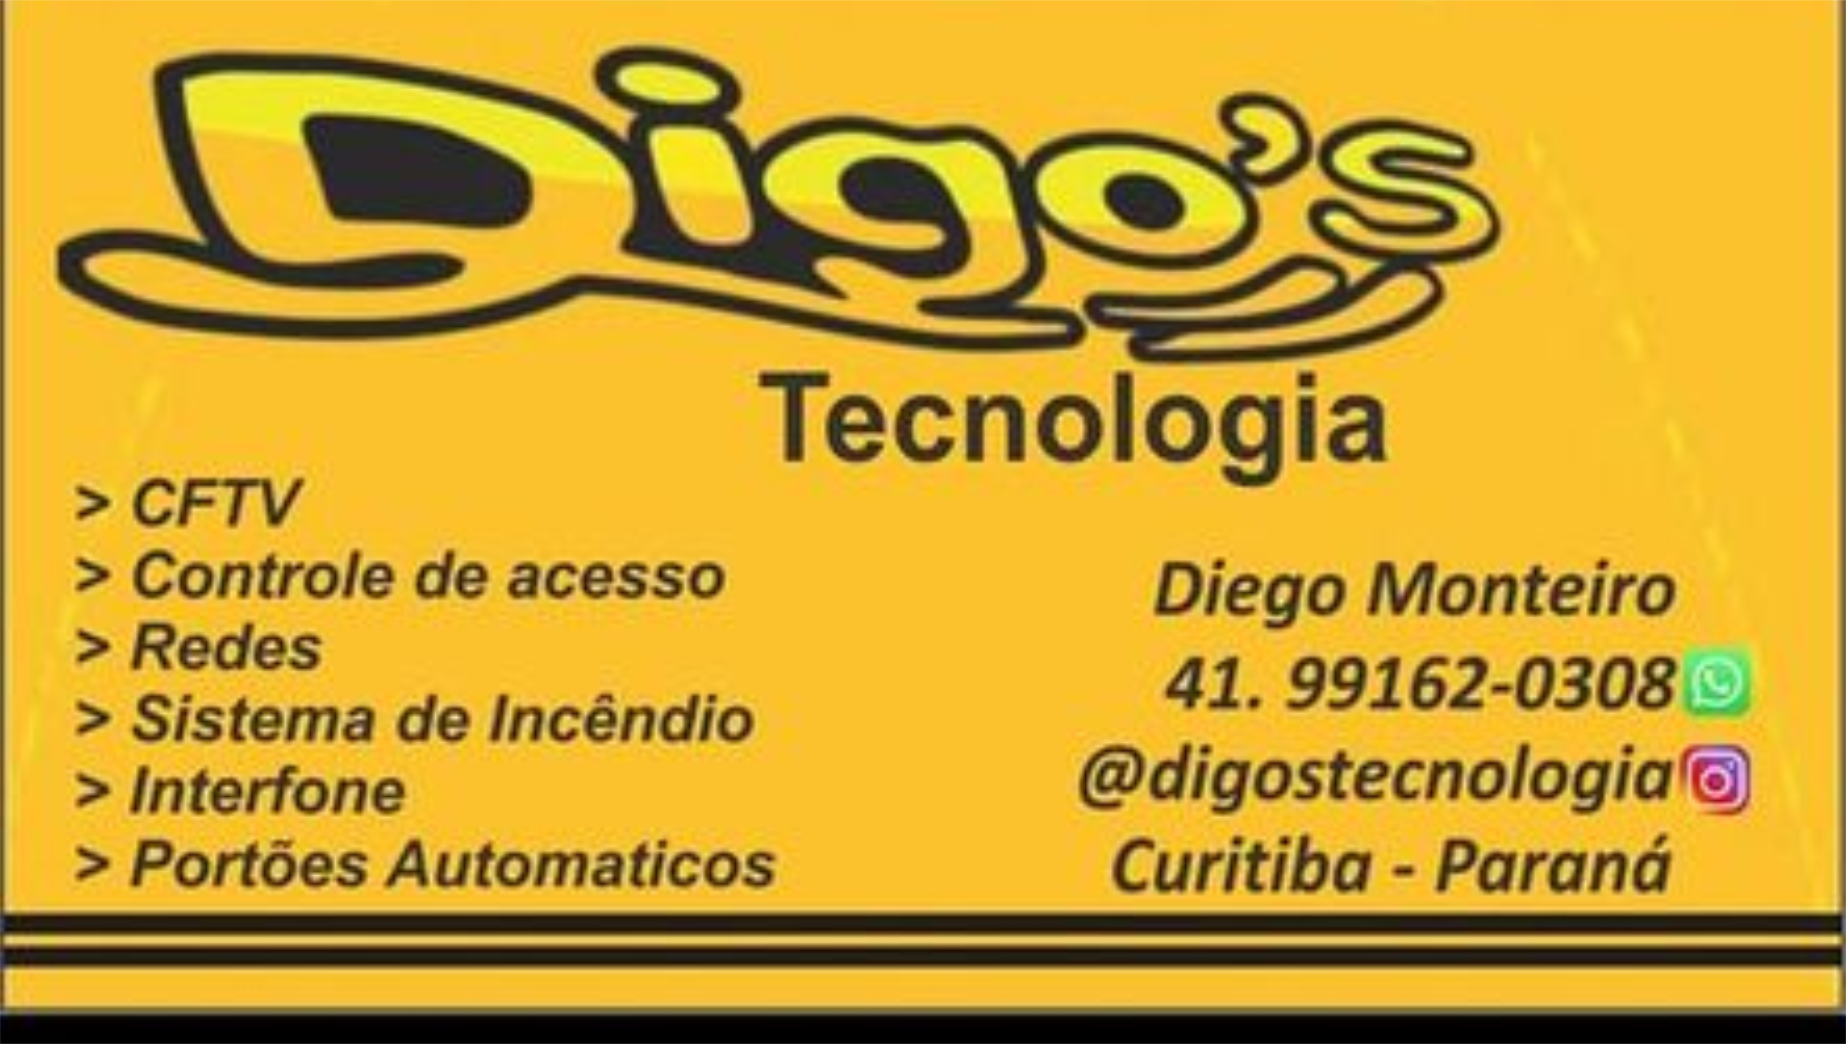 Diogos Tecnologia      Fones: (41) 99162-0308 /